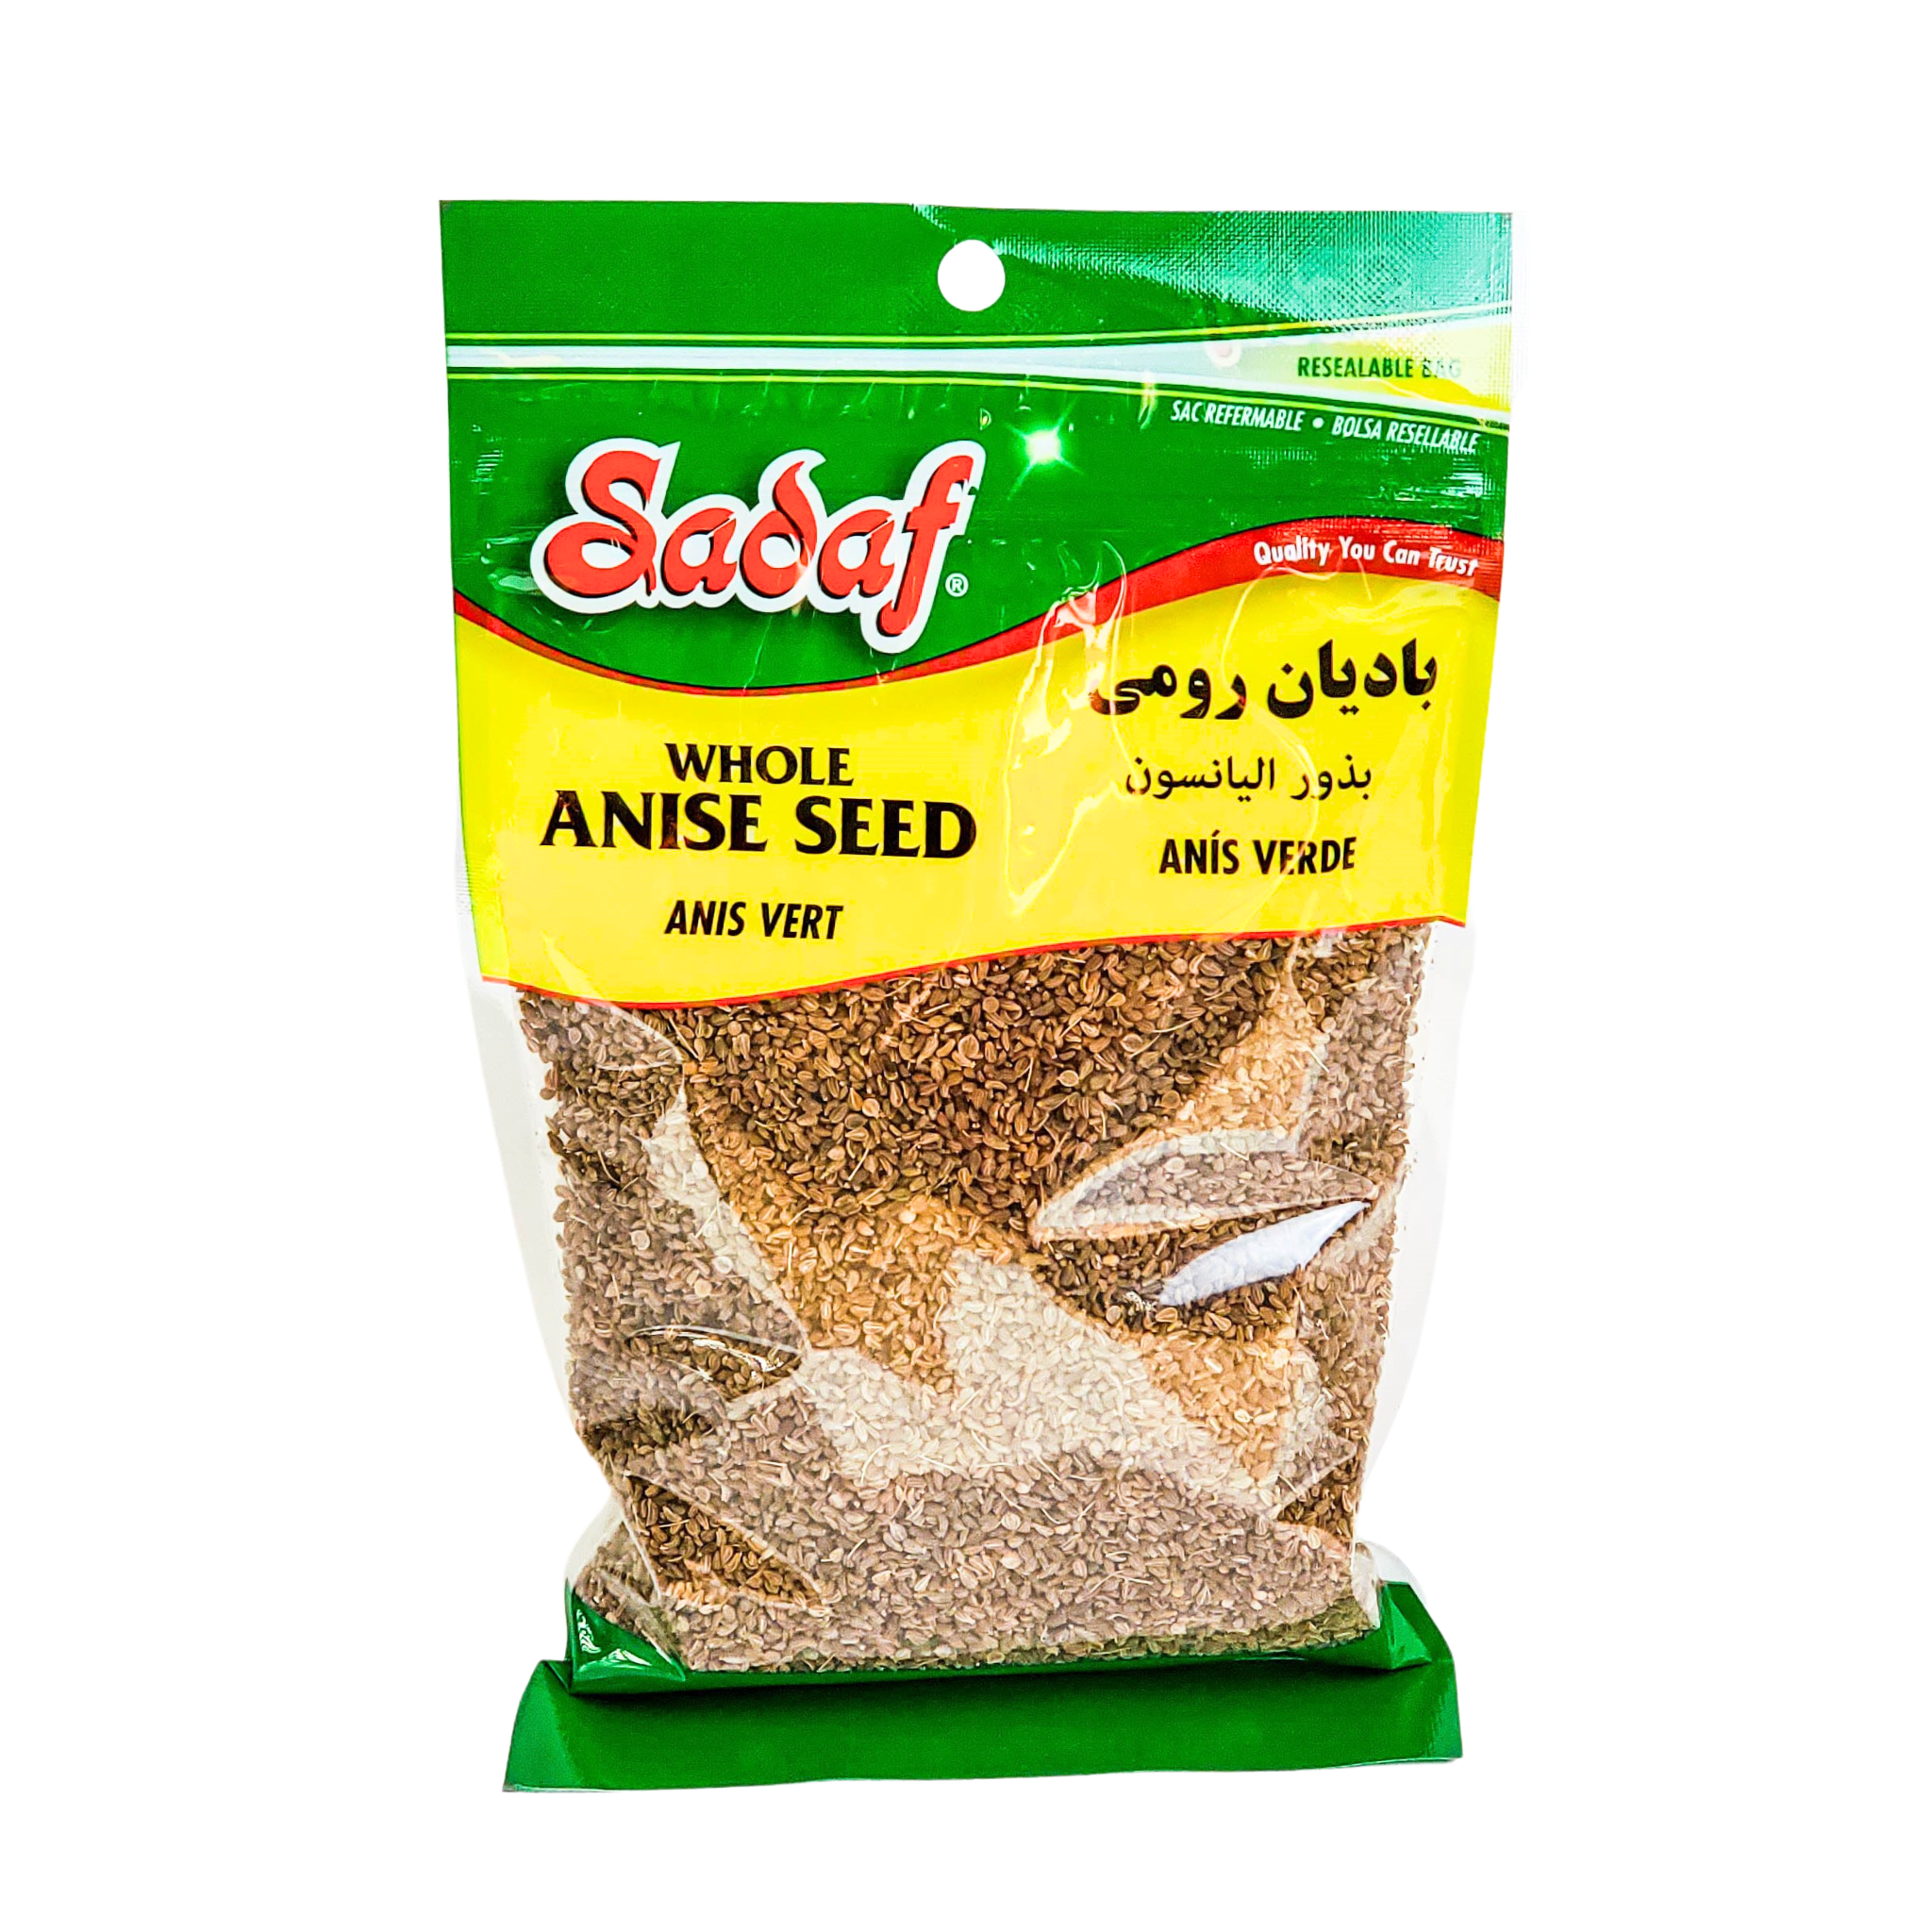 Sadaf Whole Anise Seed 170g